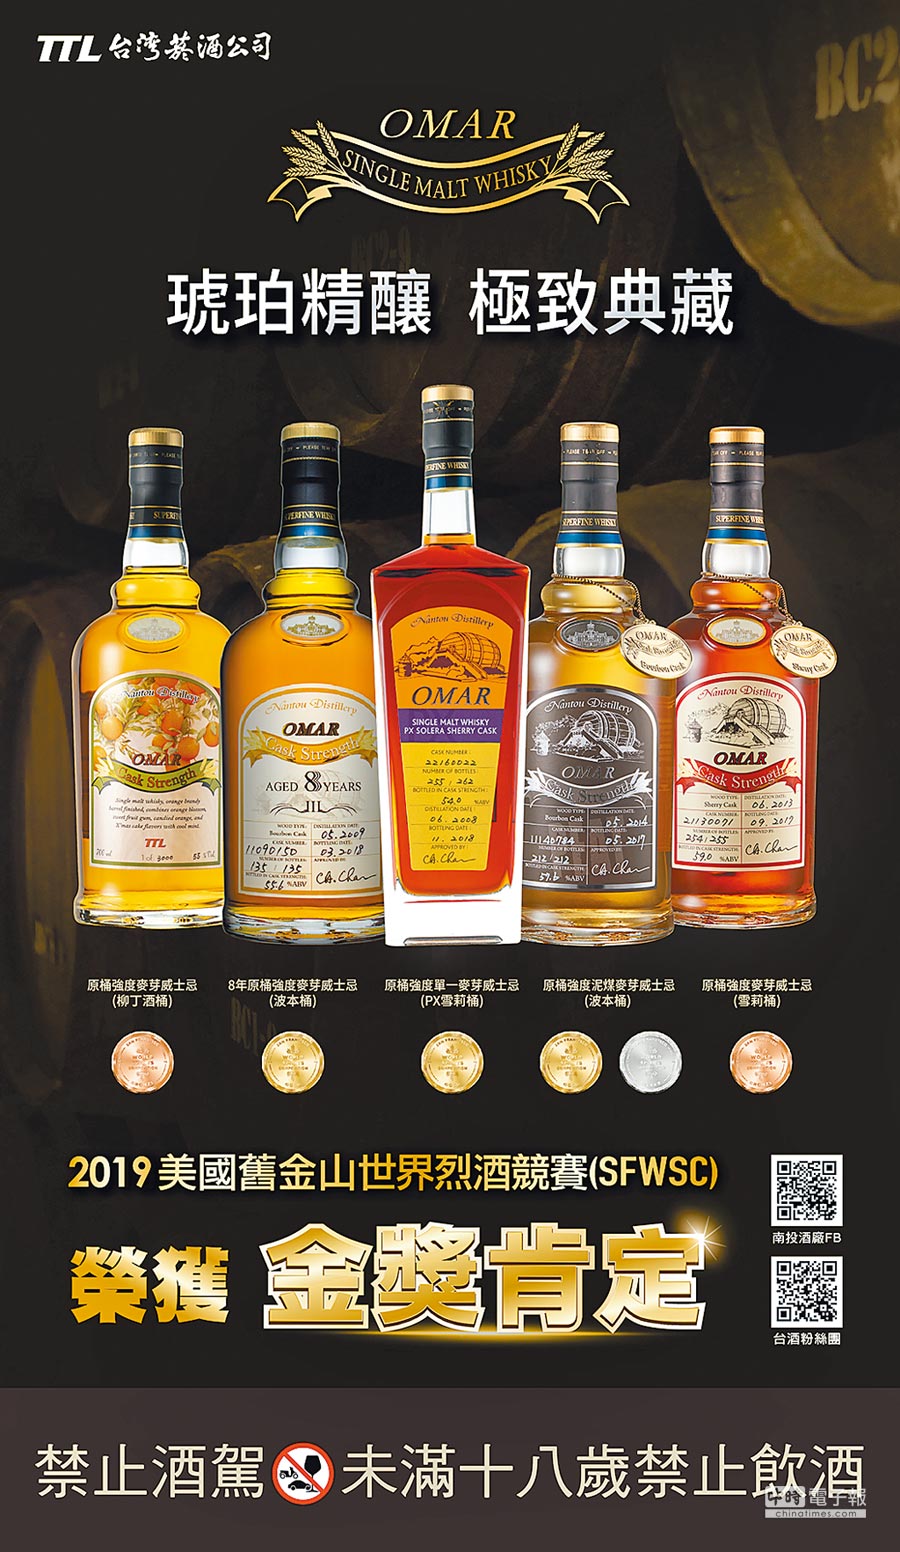 OMAR威士忌摘獎 再添3金1銀2銅 - 《旺來報》 - 中國時報